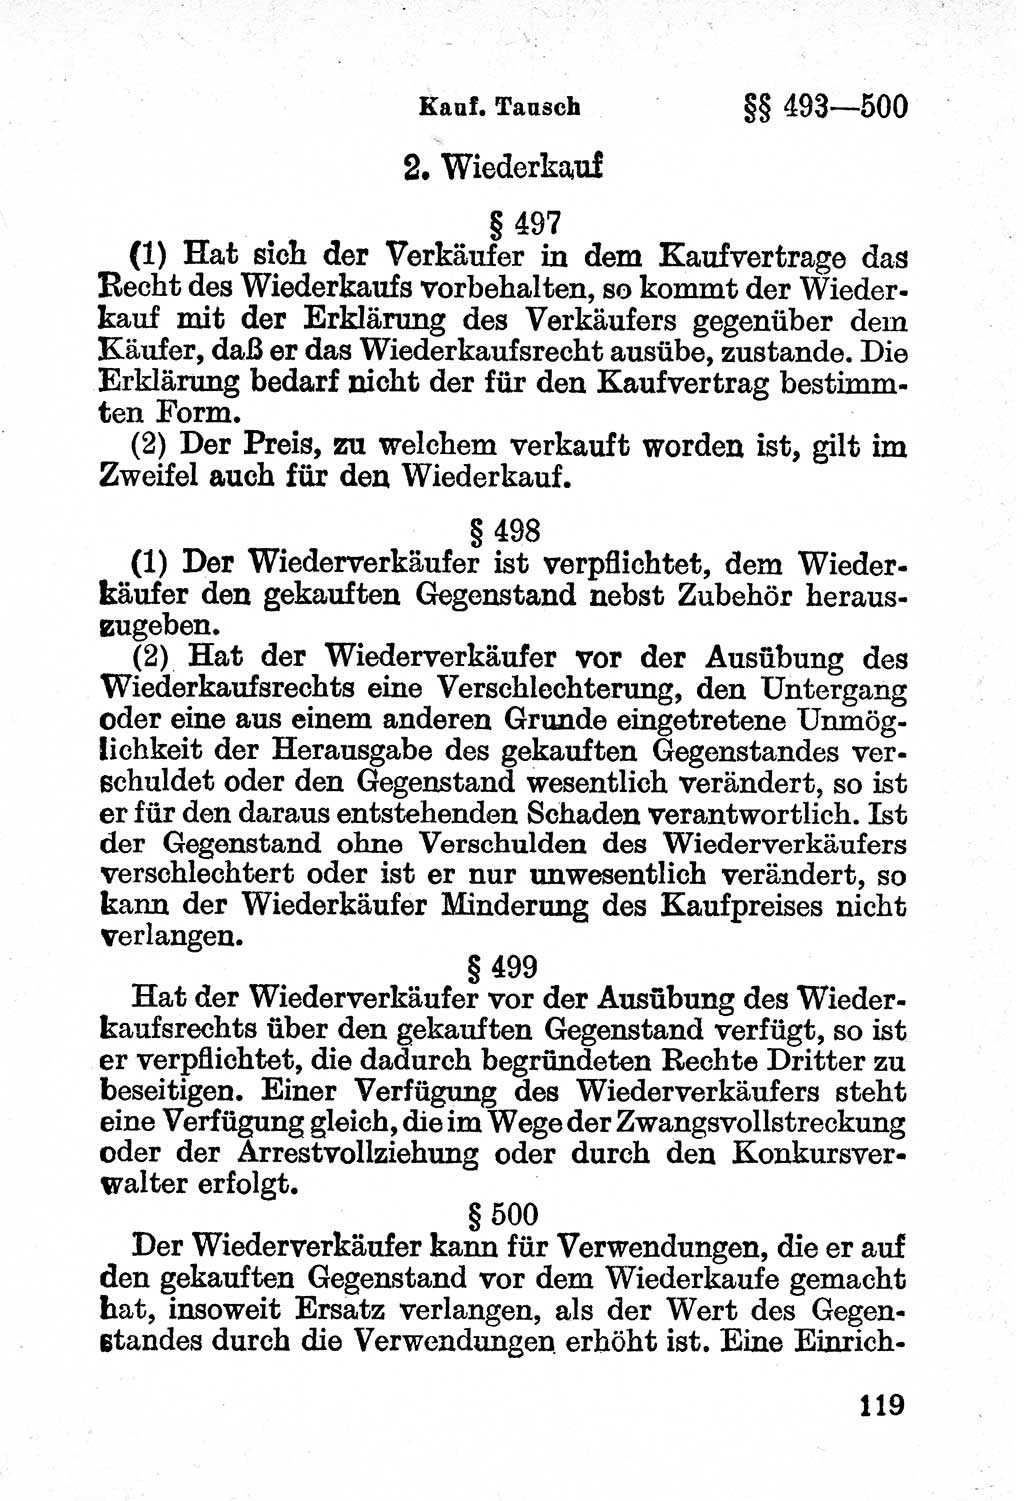 Bürgerliches Gesetzbuch (BGB) nebst wichtigen Nebengesetzen [Deutsche Demokratische Republik (DDR)] 1956, Seite 119 (BGB Nebenges. DDR 1956, S. 119)